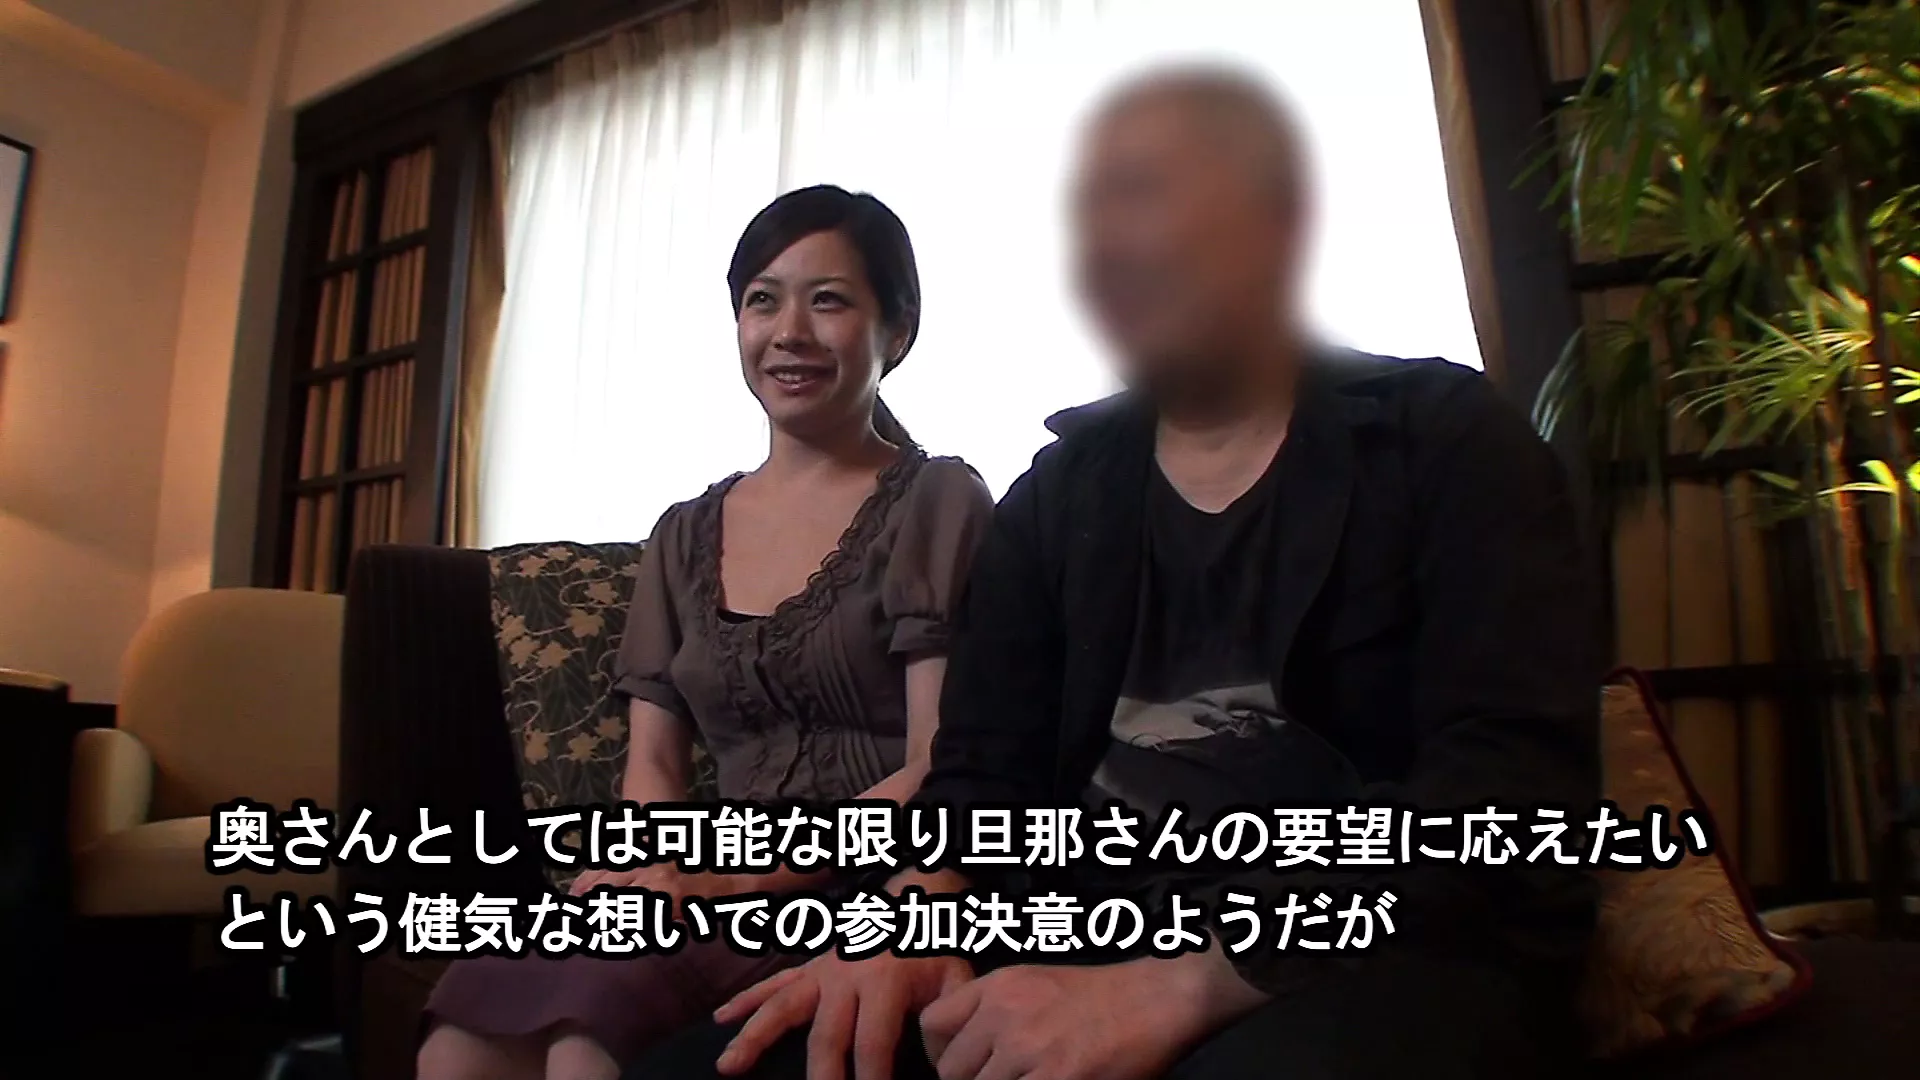 Vidéo de sexe amateur japonais dun mari partageant sa femme avec un autre homme en échange et sasseyant et regardant photo